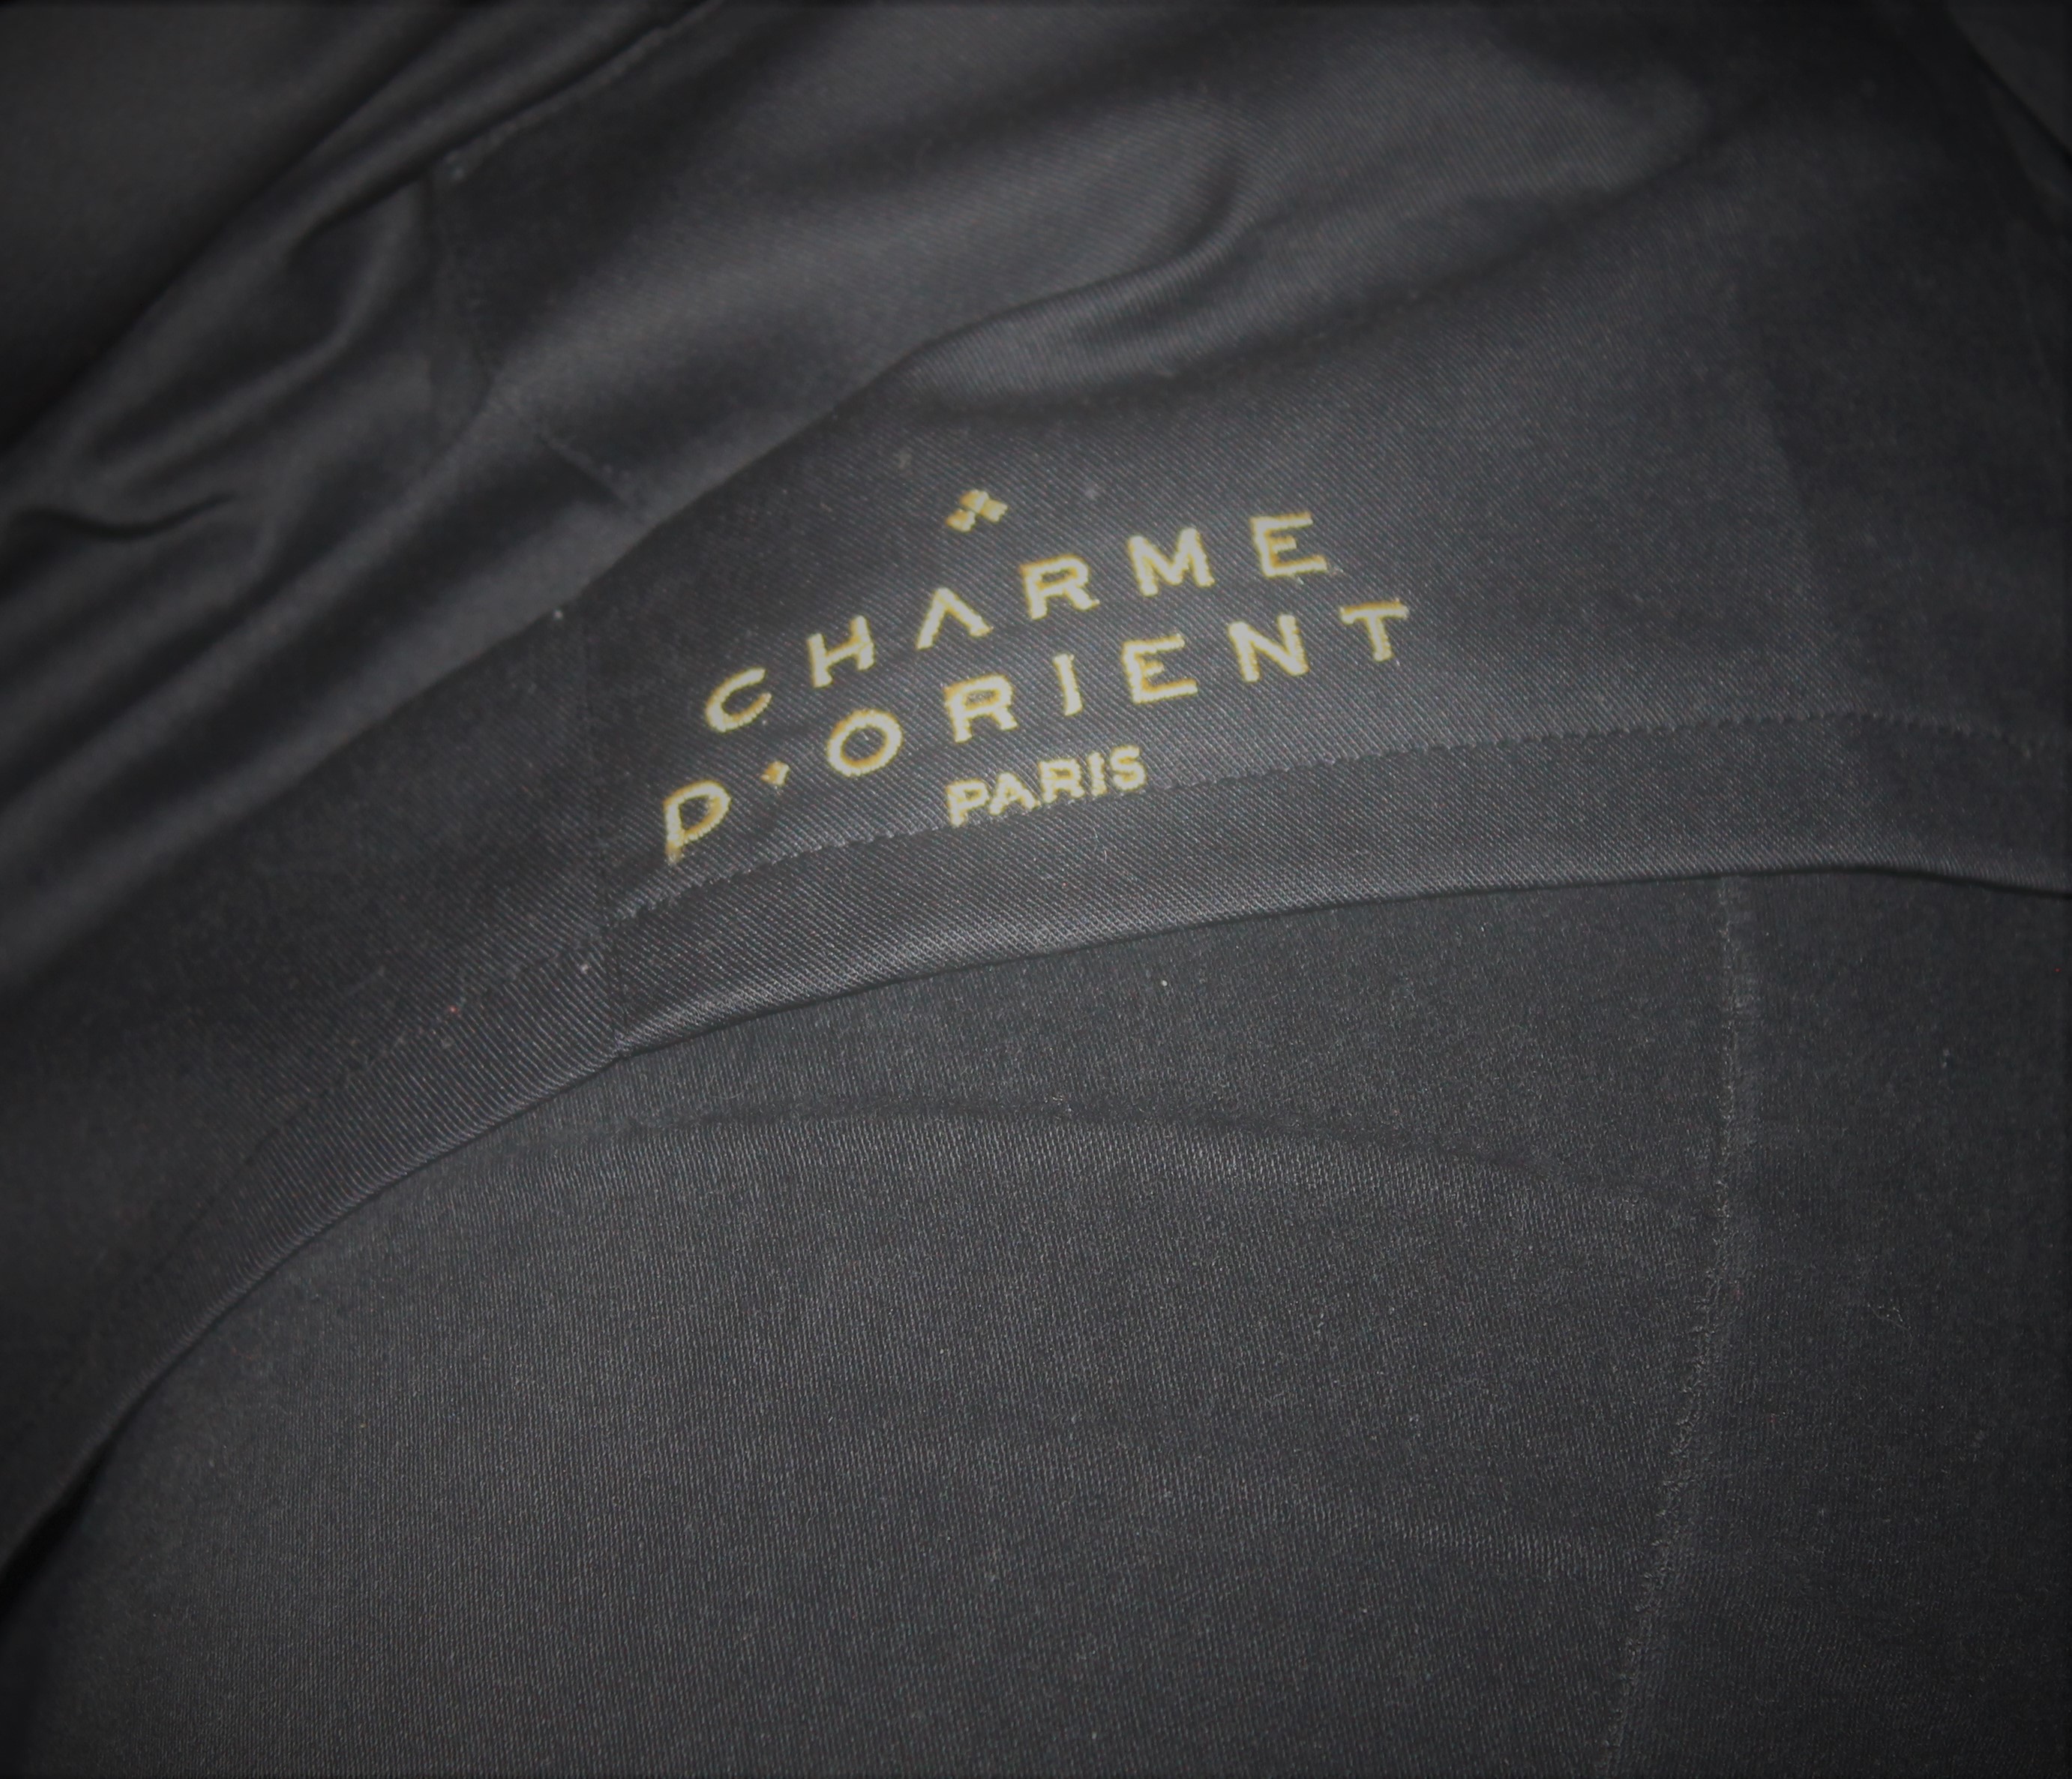  Charme D'orient : La marque de beauté Parisienne qui célèbre l'Orient